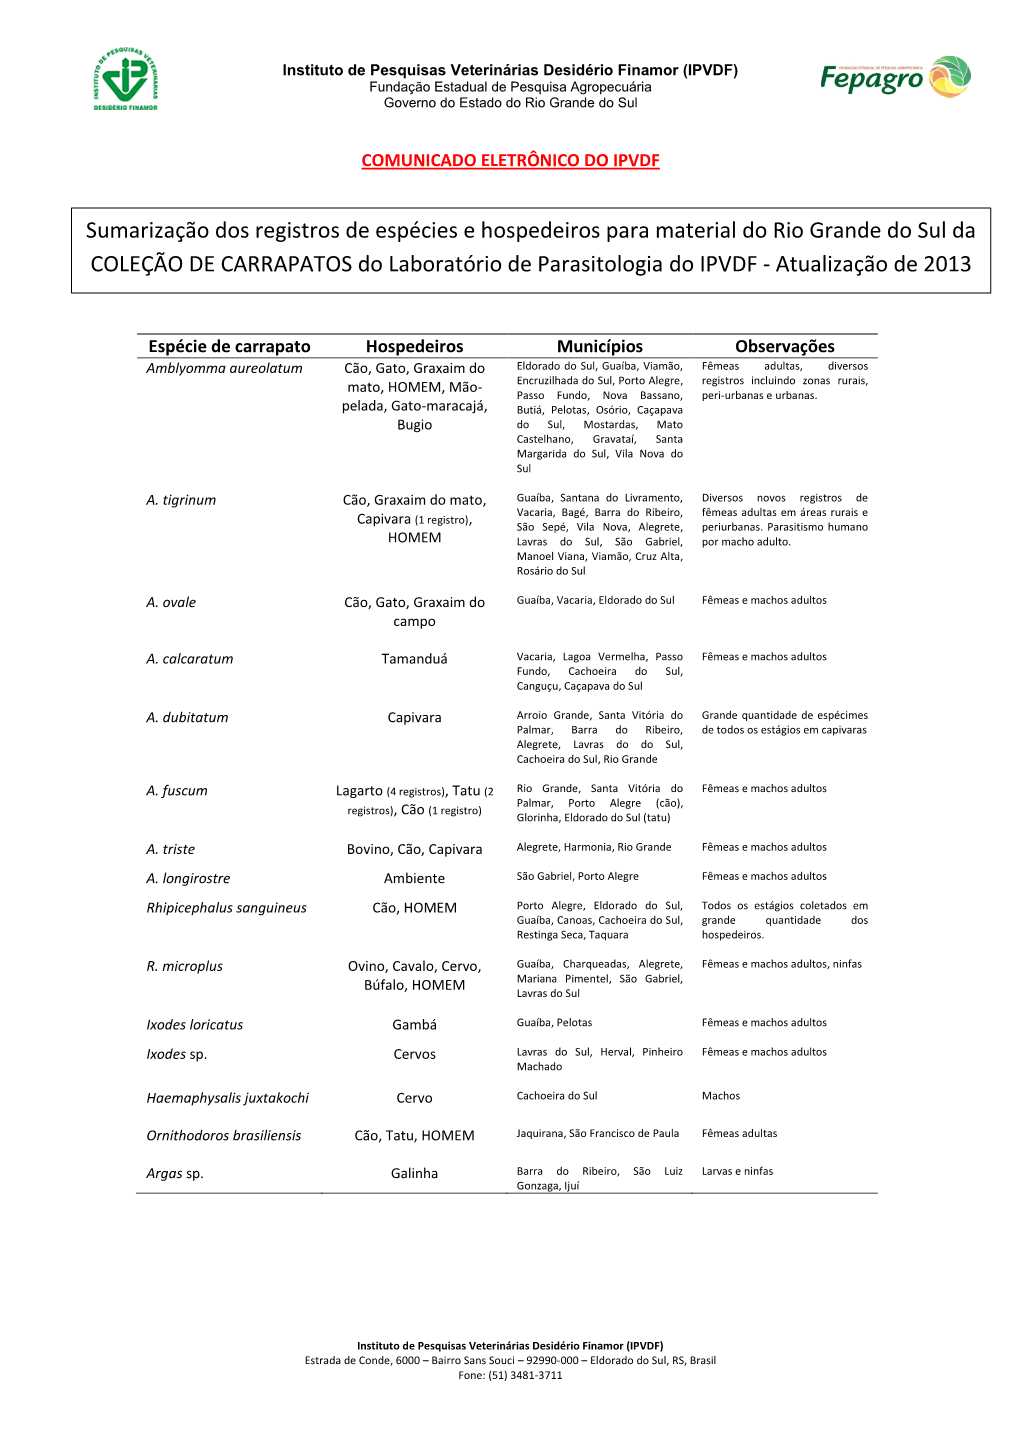 COLEÇÃO DE CARRAPATOS Do Laboratório De Parasitologia Do IPVDF - Atualização De 2013